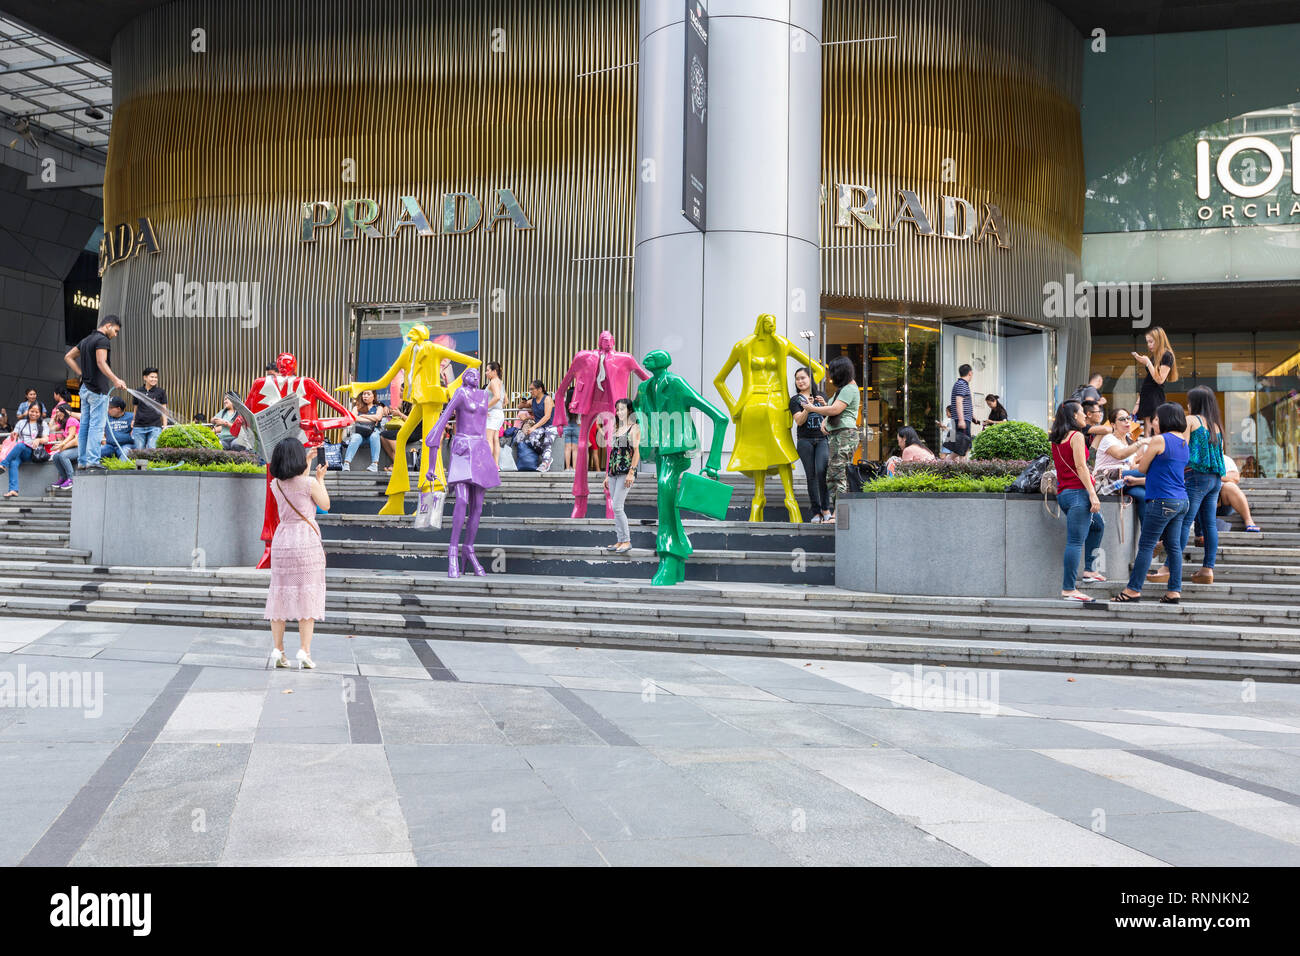 Von Singapur, der Orchard Road Street Scene. Touristen posieren für Fotos inmitten moderner Skulptur außerhalb ION Mall. Stockfoto